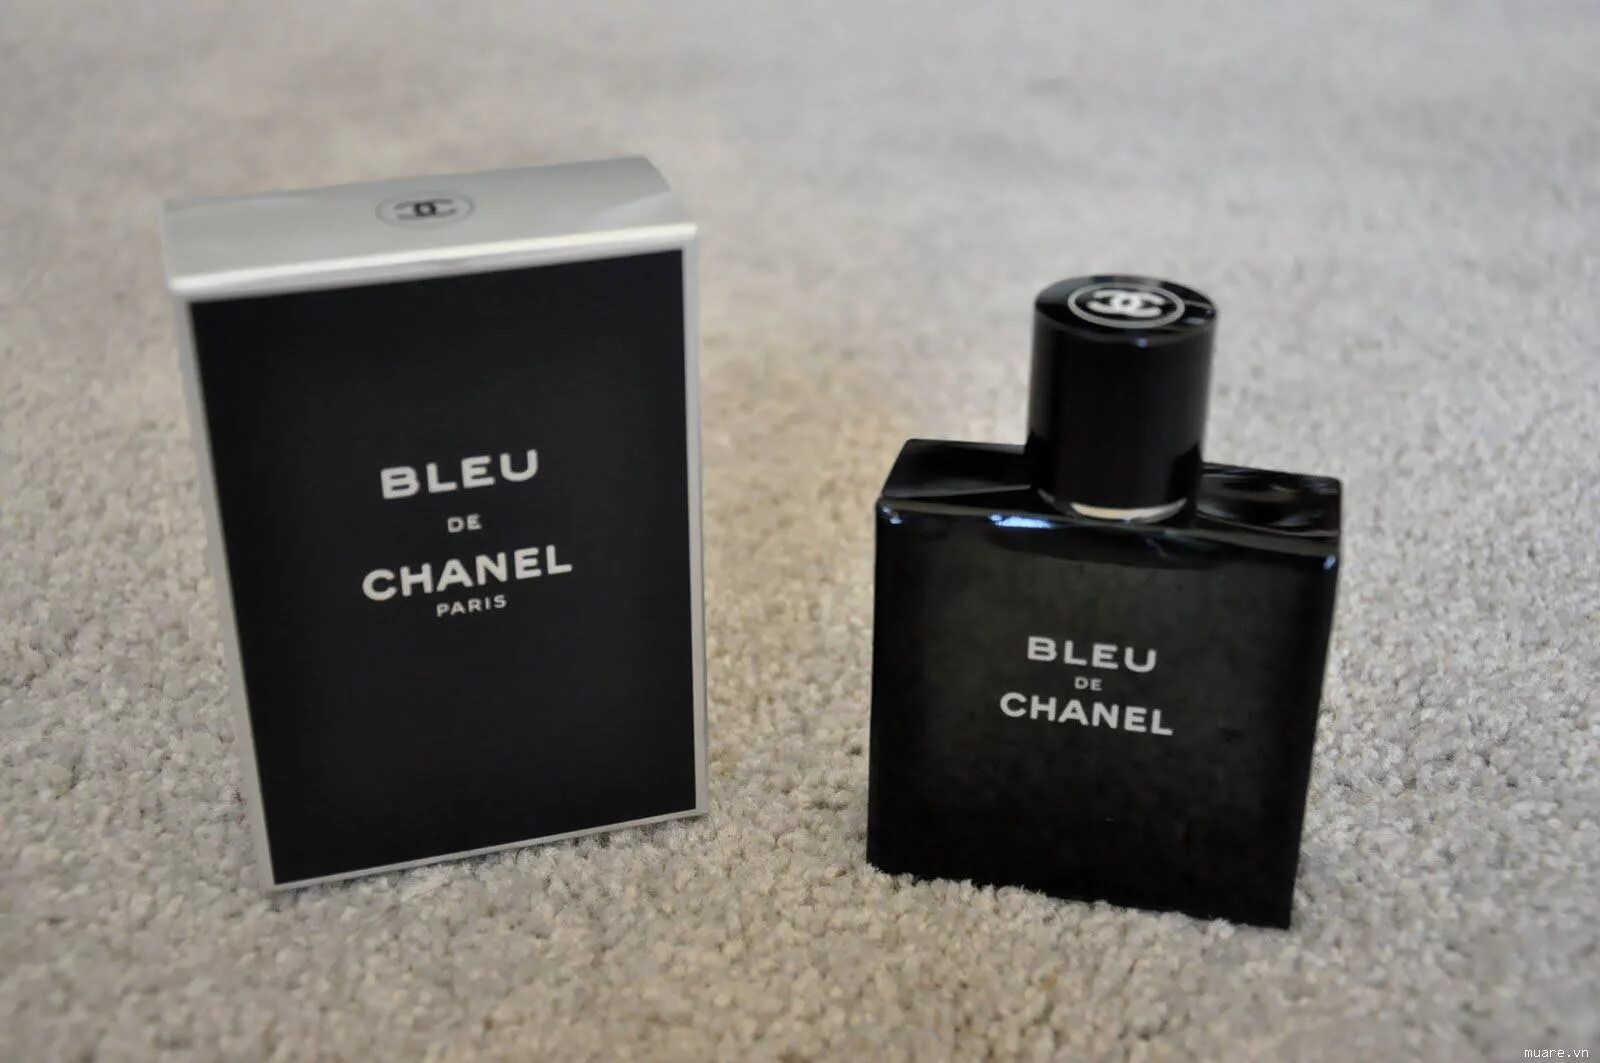 Chanel Blue de Chanel 100ml. Bleu de Chanel Parfum Chanel for men. Chanel bleu de Chanel 100 ml. Шанель Блю мужские 100мл туалетная вода. Блюда шанель мужские